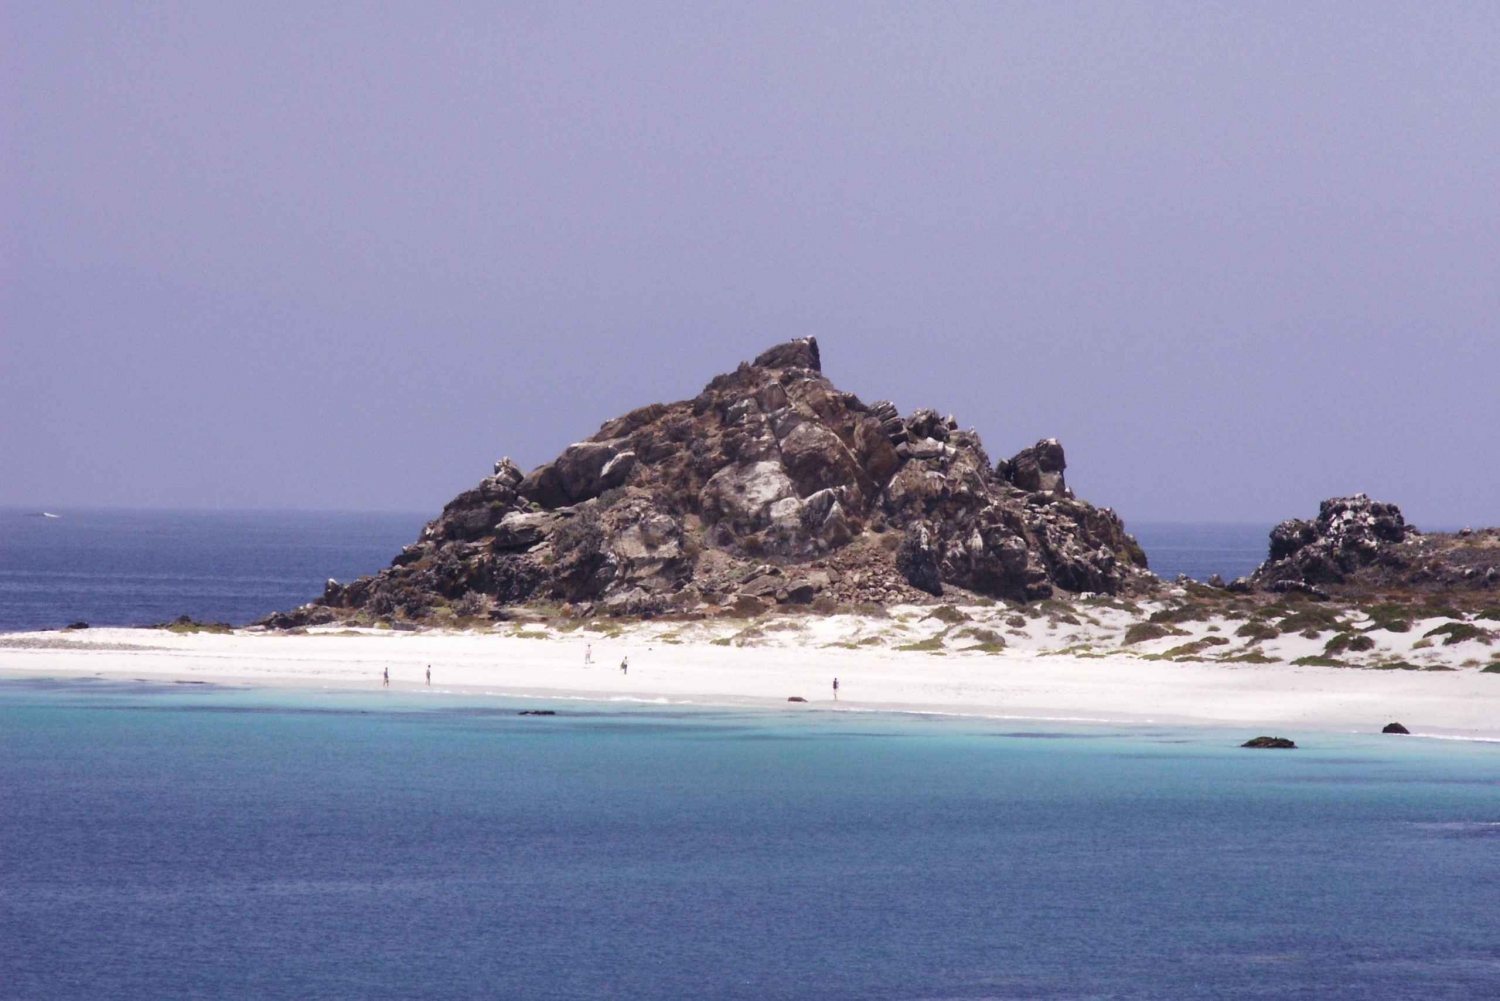 Damasin tai Chañaralin saari: Humboldtin pingviinien suojelualueella.